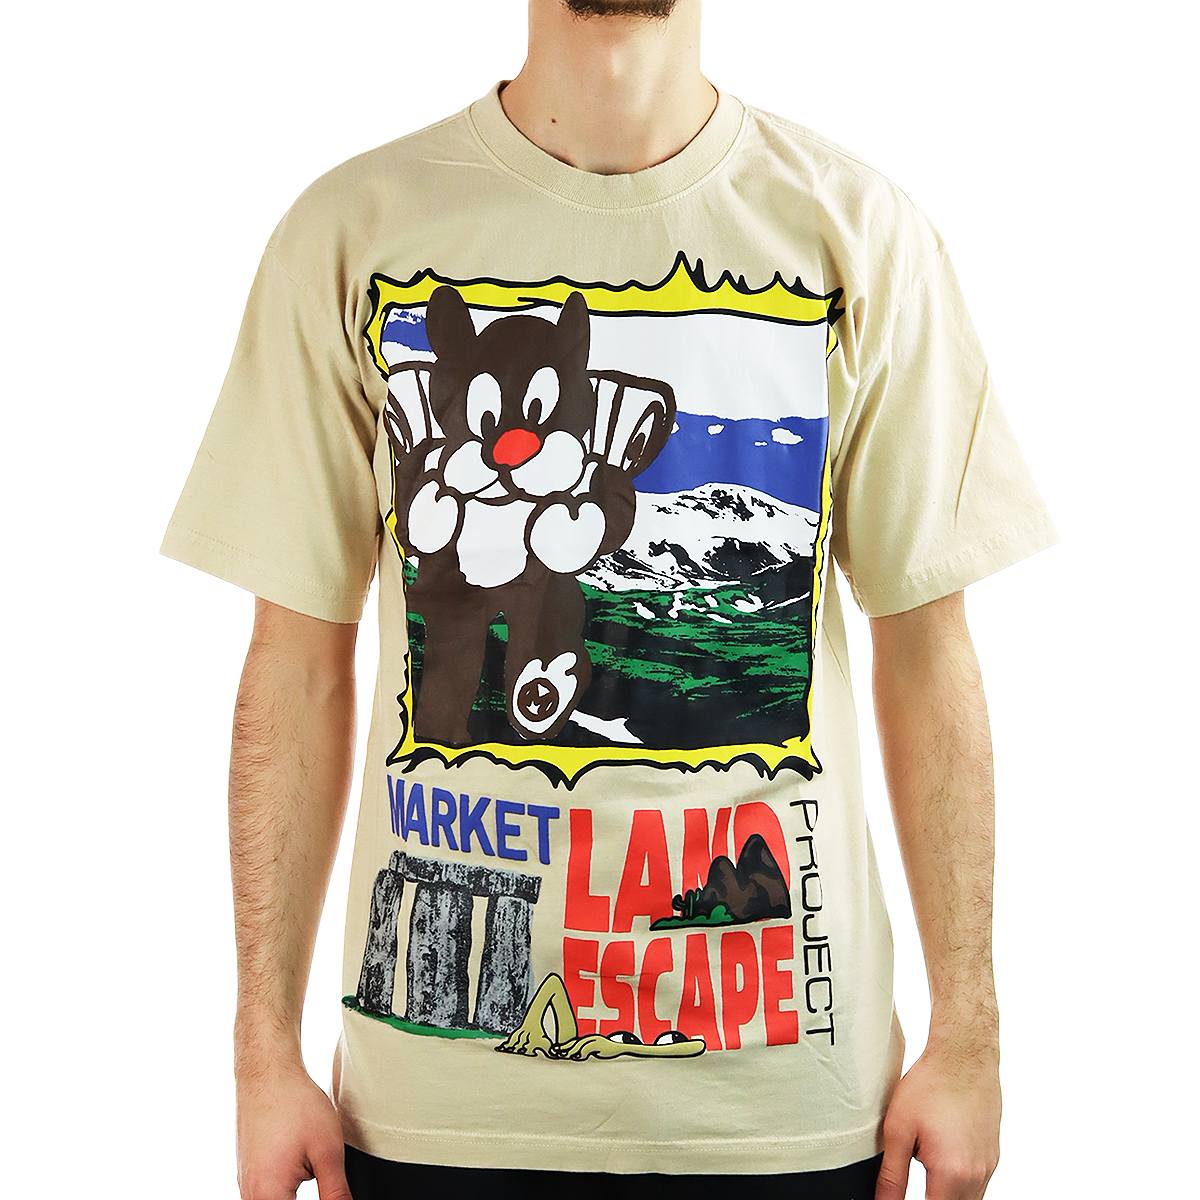 Market Land Escape Project T-Shirt 399001289/2475-